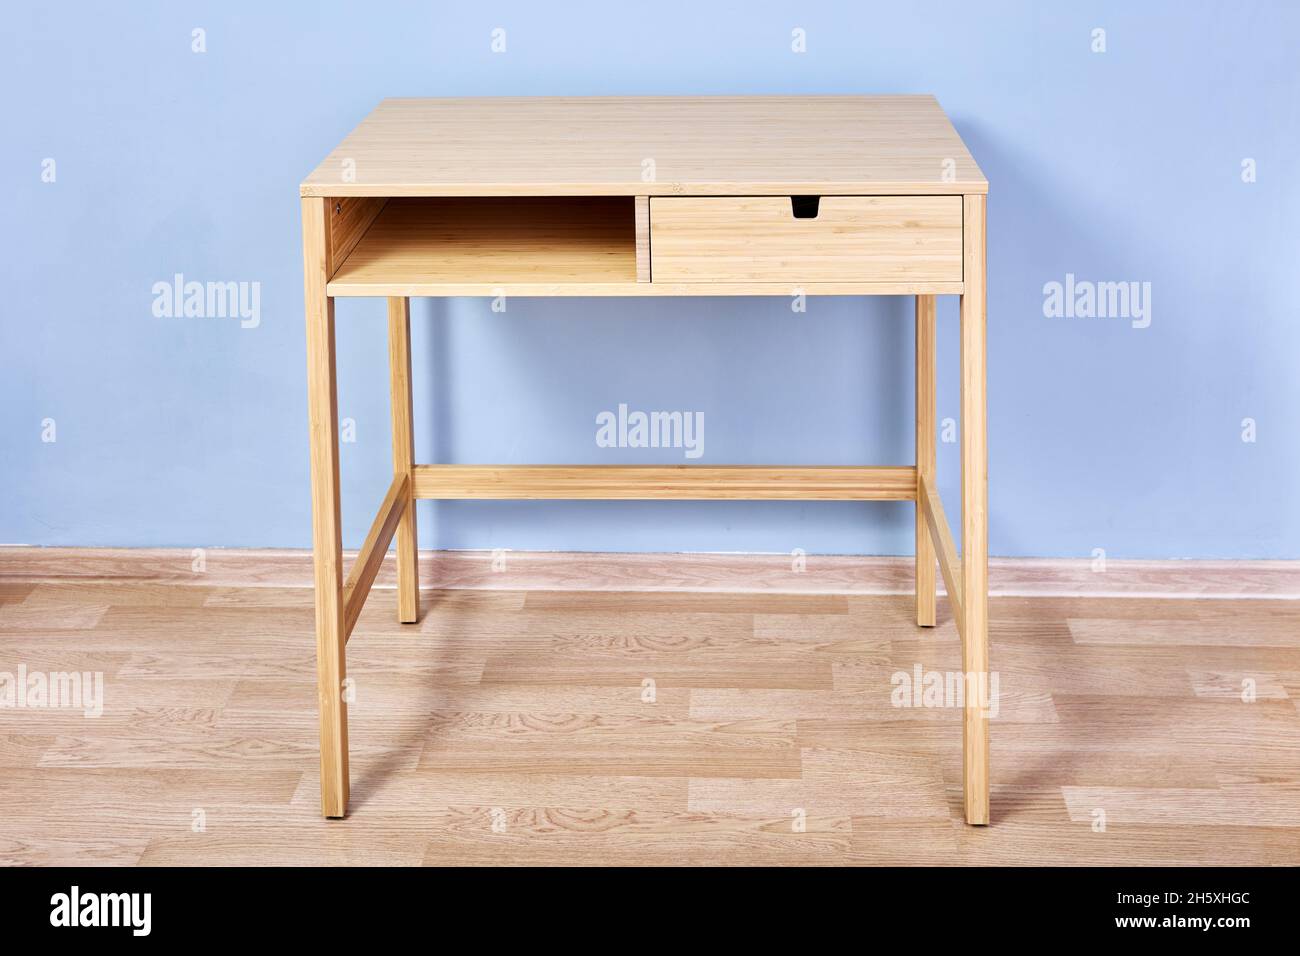 Schreibtisch oder Konsolentisch mit Stauraum Stockfotografie - Alamy